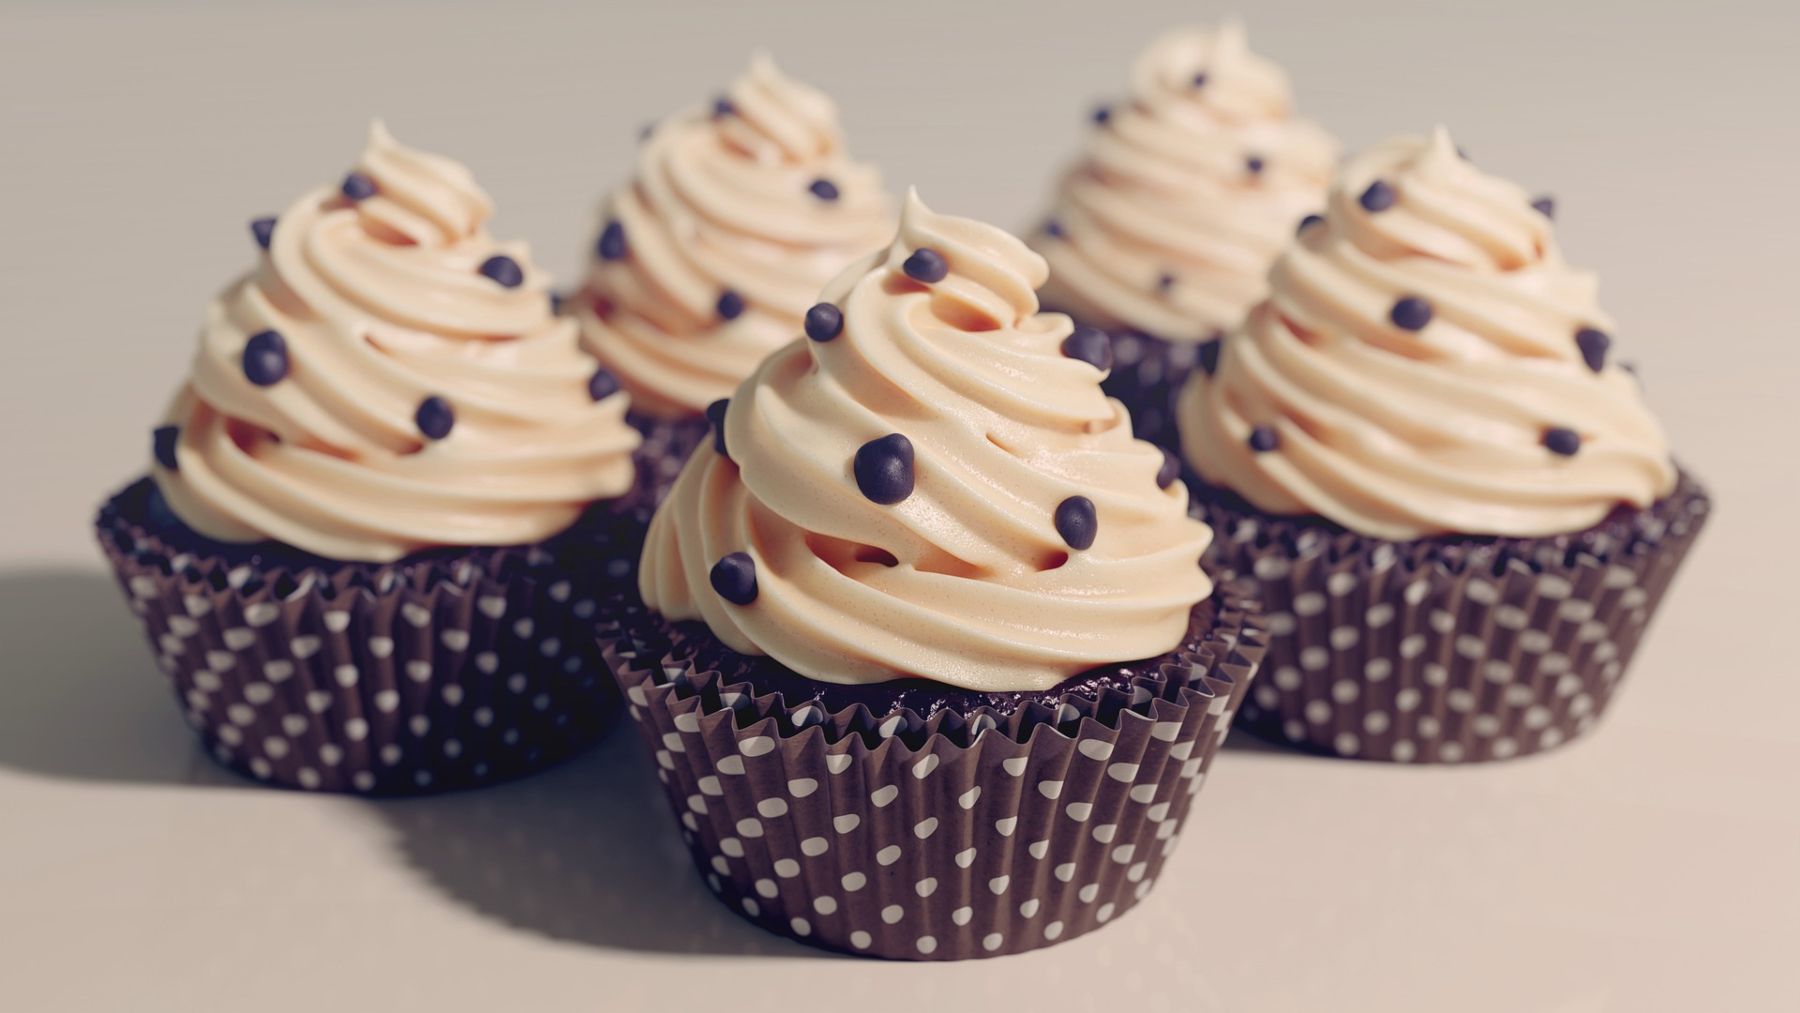 Cupcakes keto con chocolate: receta sin azúcar 4